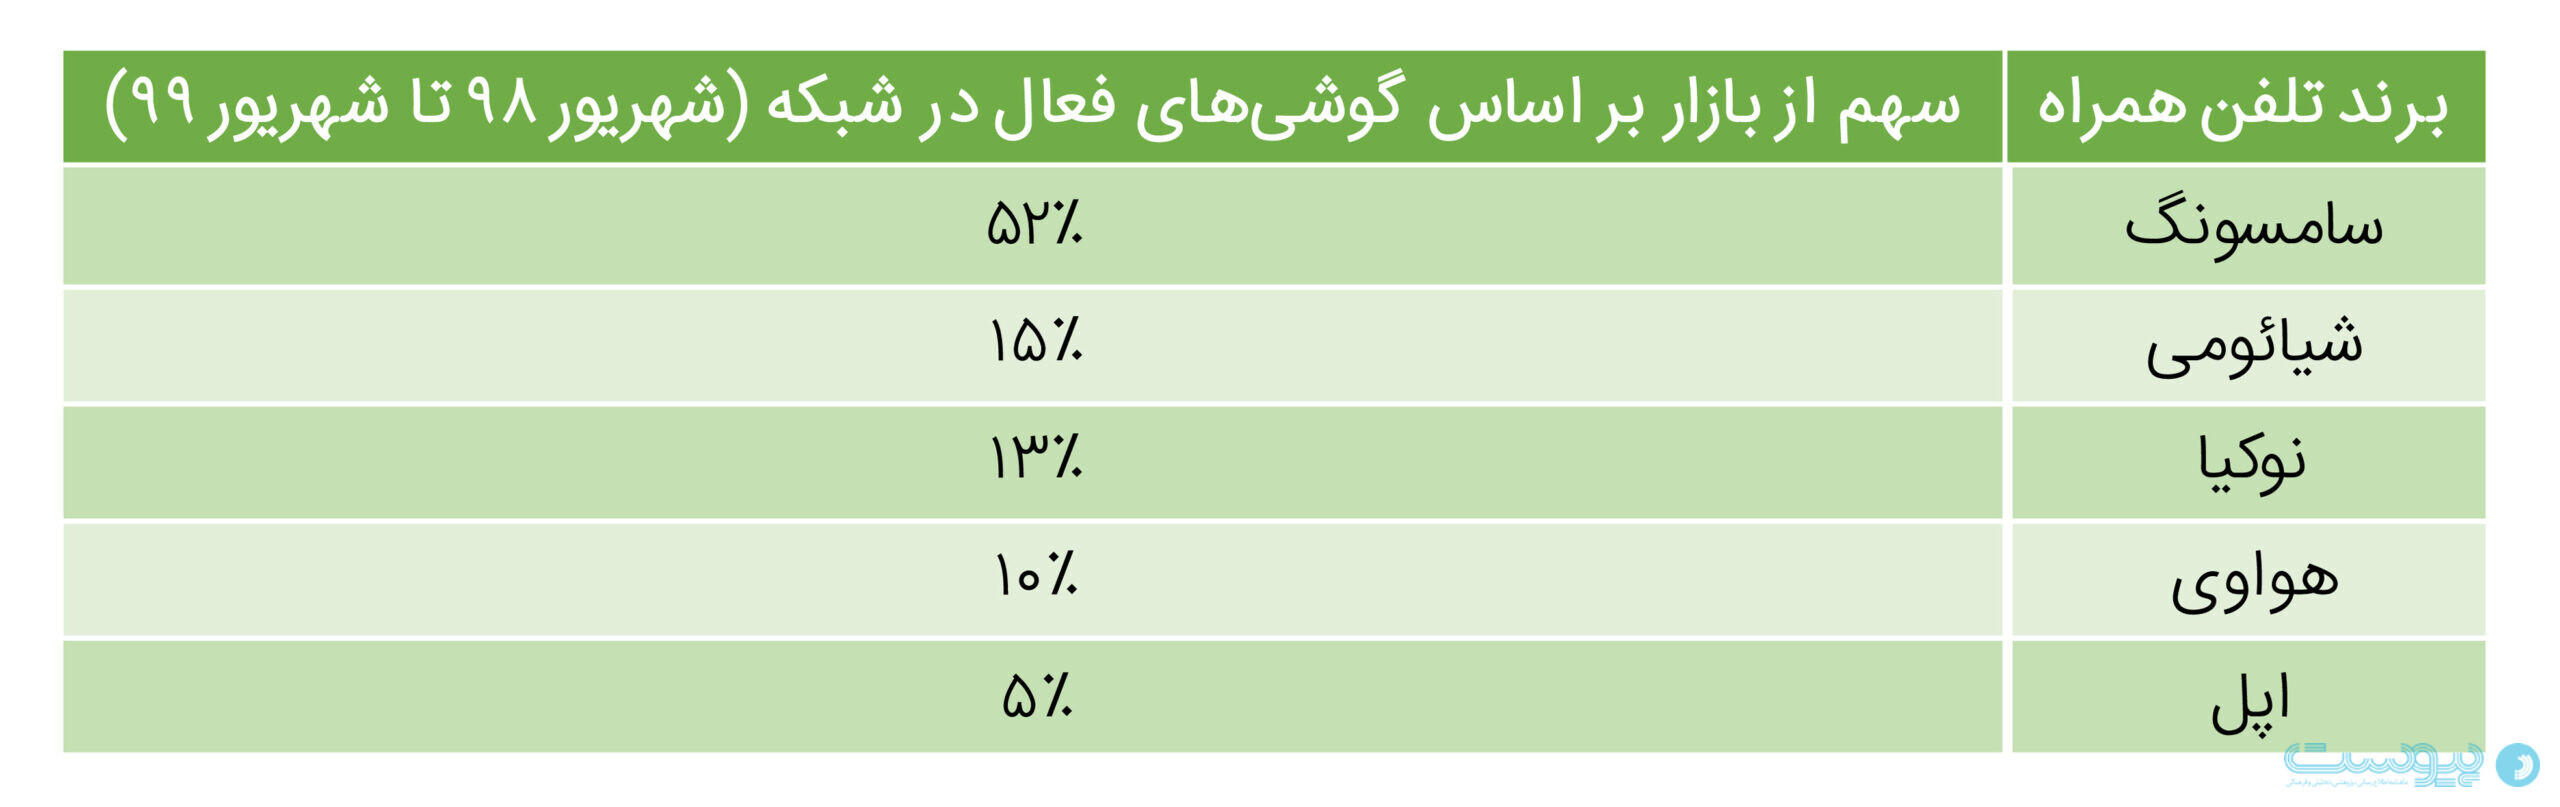 جدول سهم برند‌های تلفن همراه در ایران